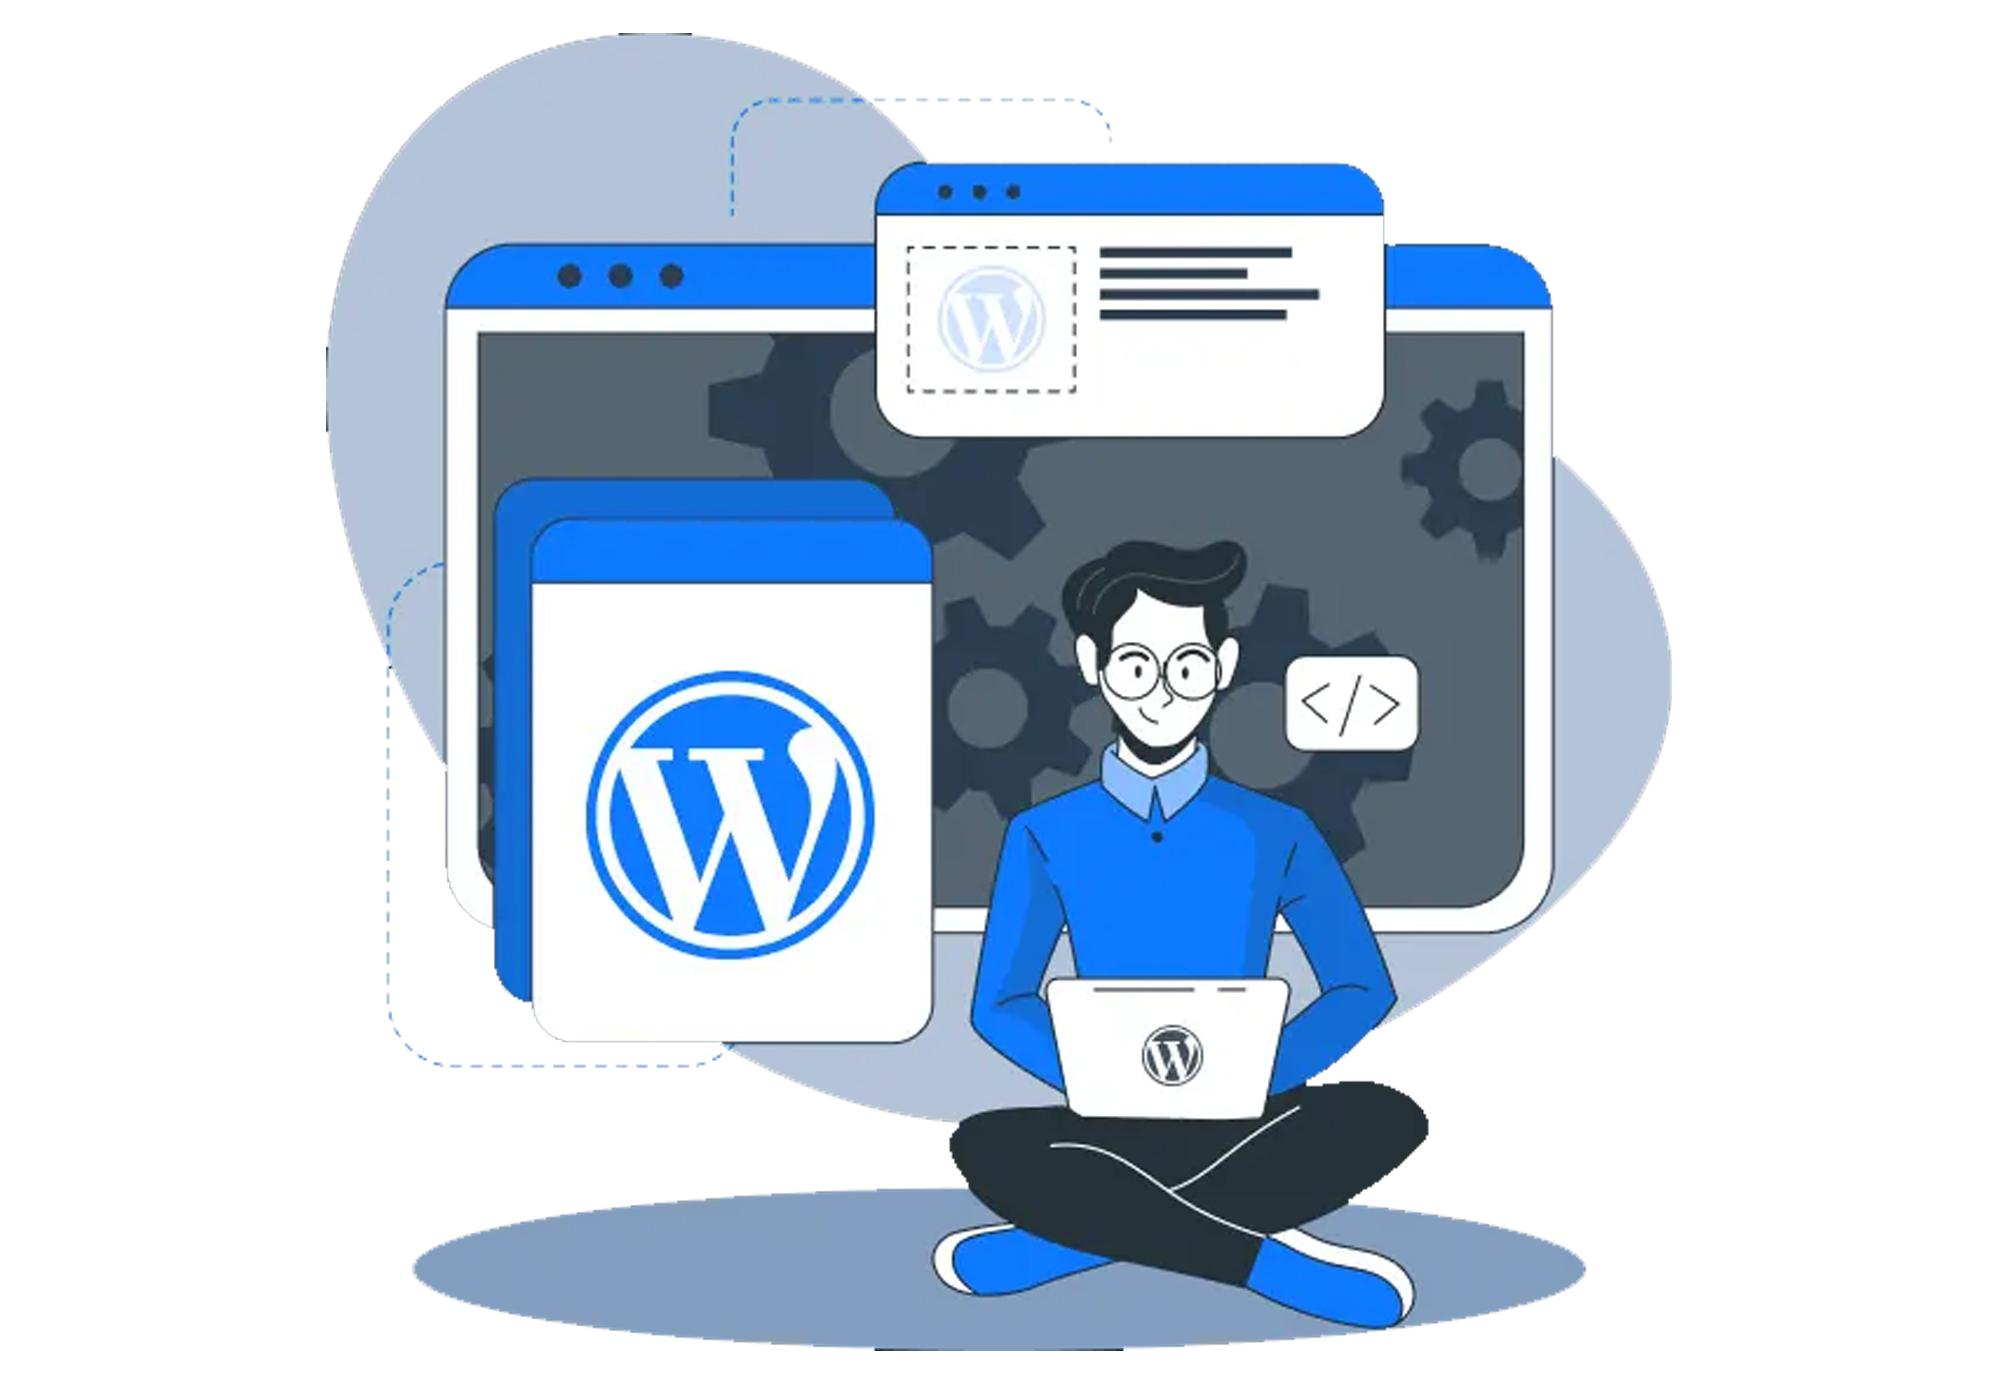 Een afbeelding van een WordPress-websiteontwikkelaar die zit met zijn laptop en enkele schermen achter hem met het WordPress-logo